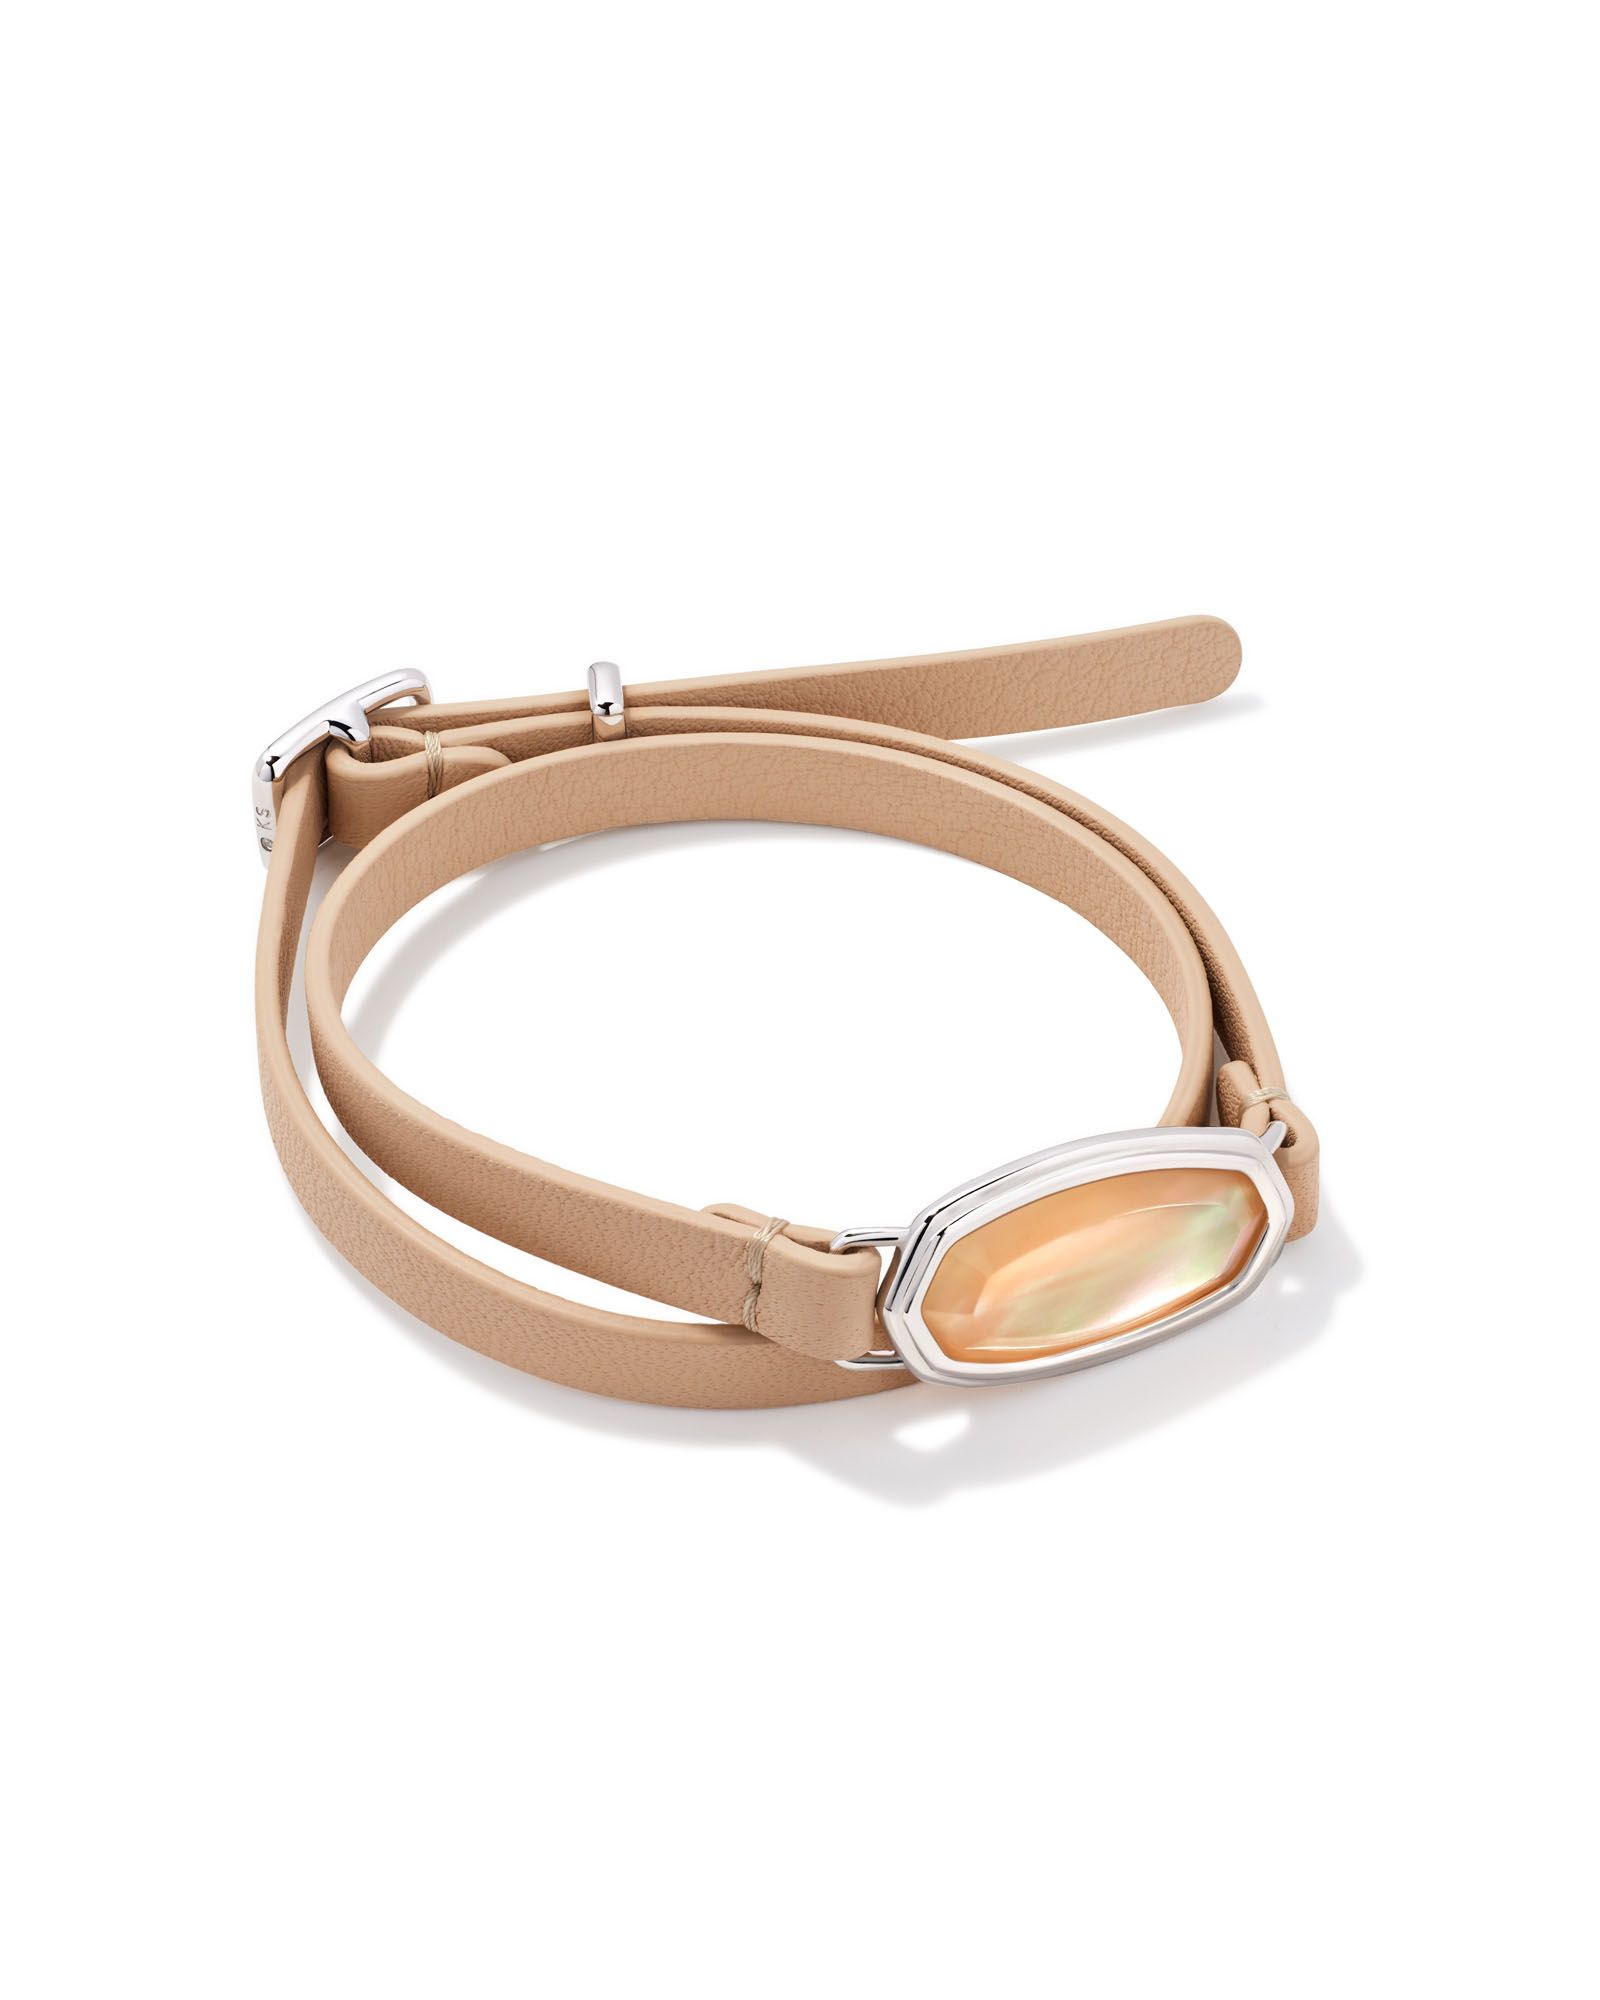 Framed Dani Silver Wrap Bracelet in Golden Abalone | Kendra Scott | Kendra Scott